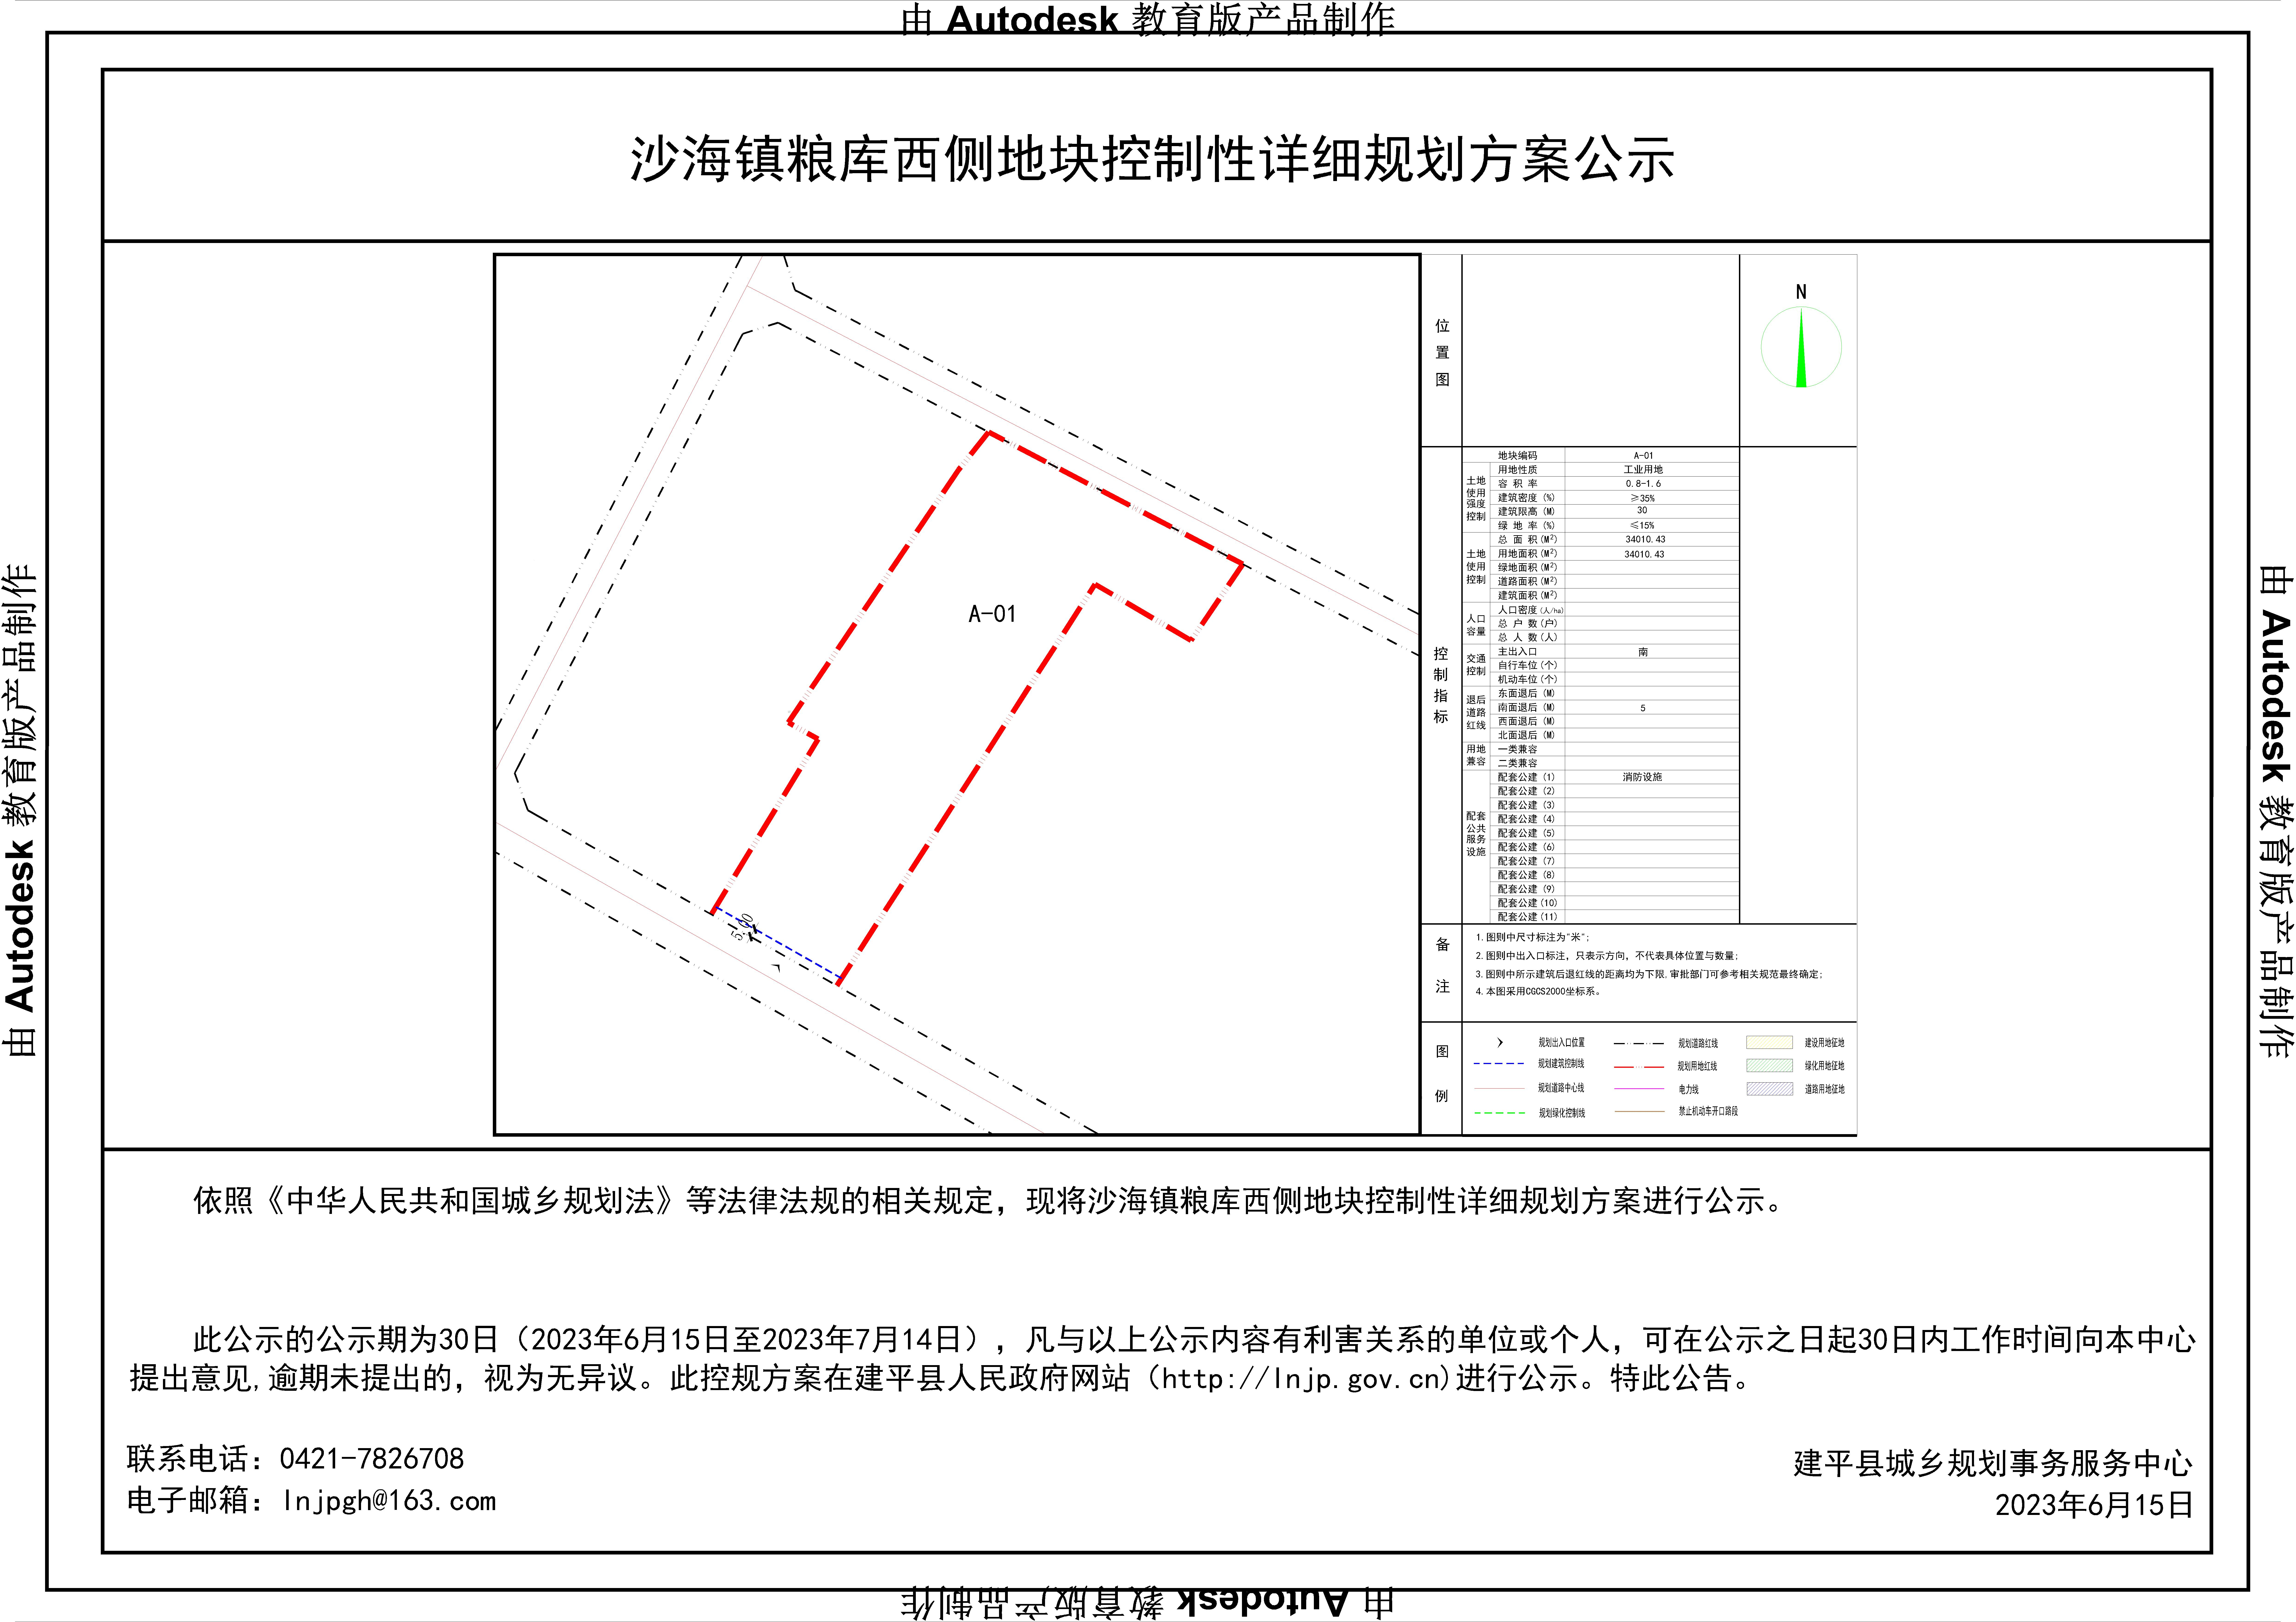 沙海镇粮库西侧地块控制性详细规划方案公示-Model.jpg